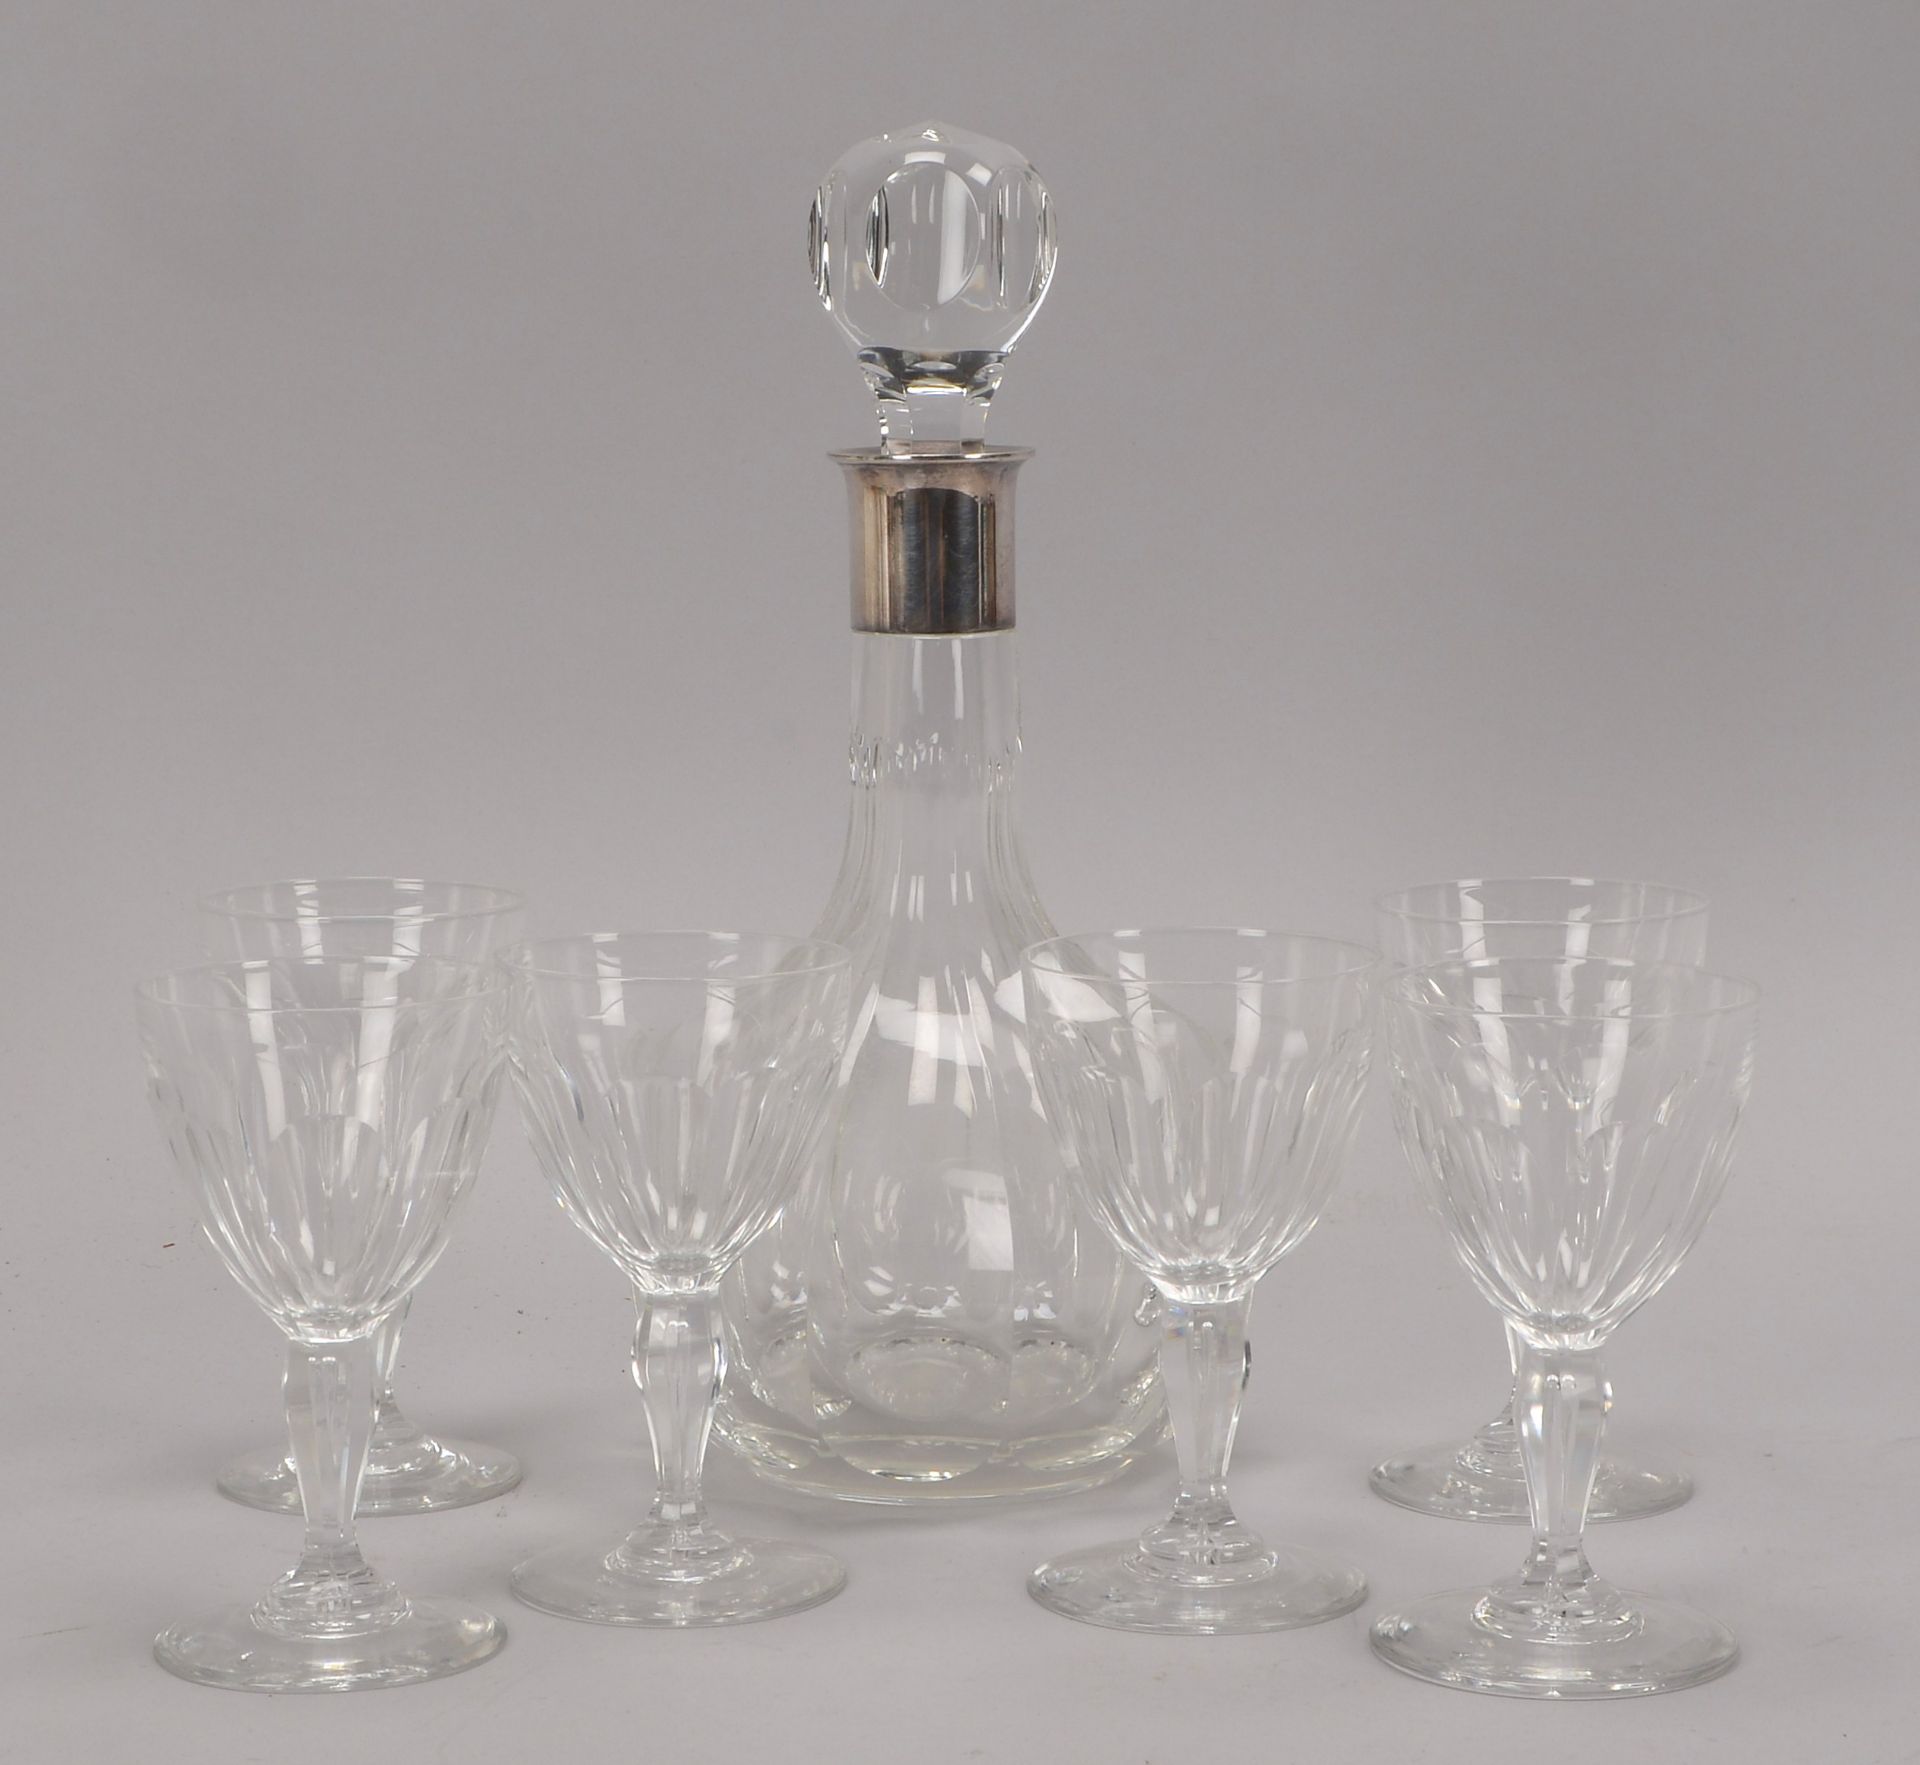 Karaffe, Kristallglas, mit Silbermontierung, Hoehe 28,5 cm, und Satz Glaeser, 6 Stueck, Hoehe 12,5 c - Image 2 of 4